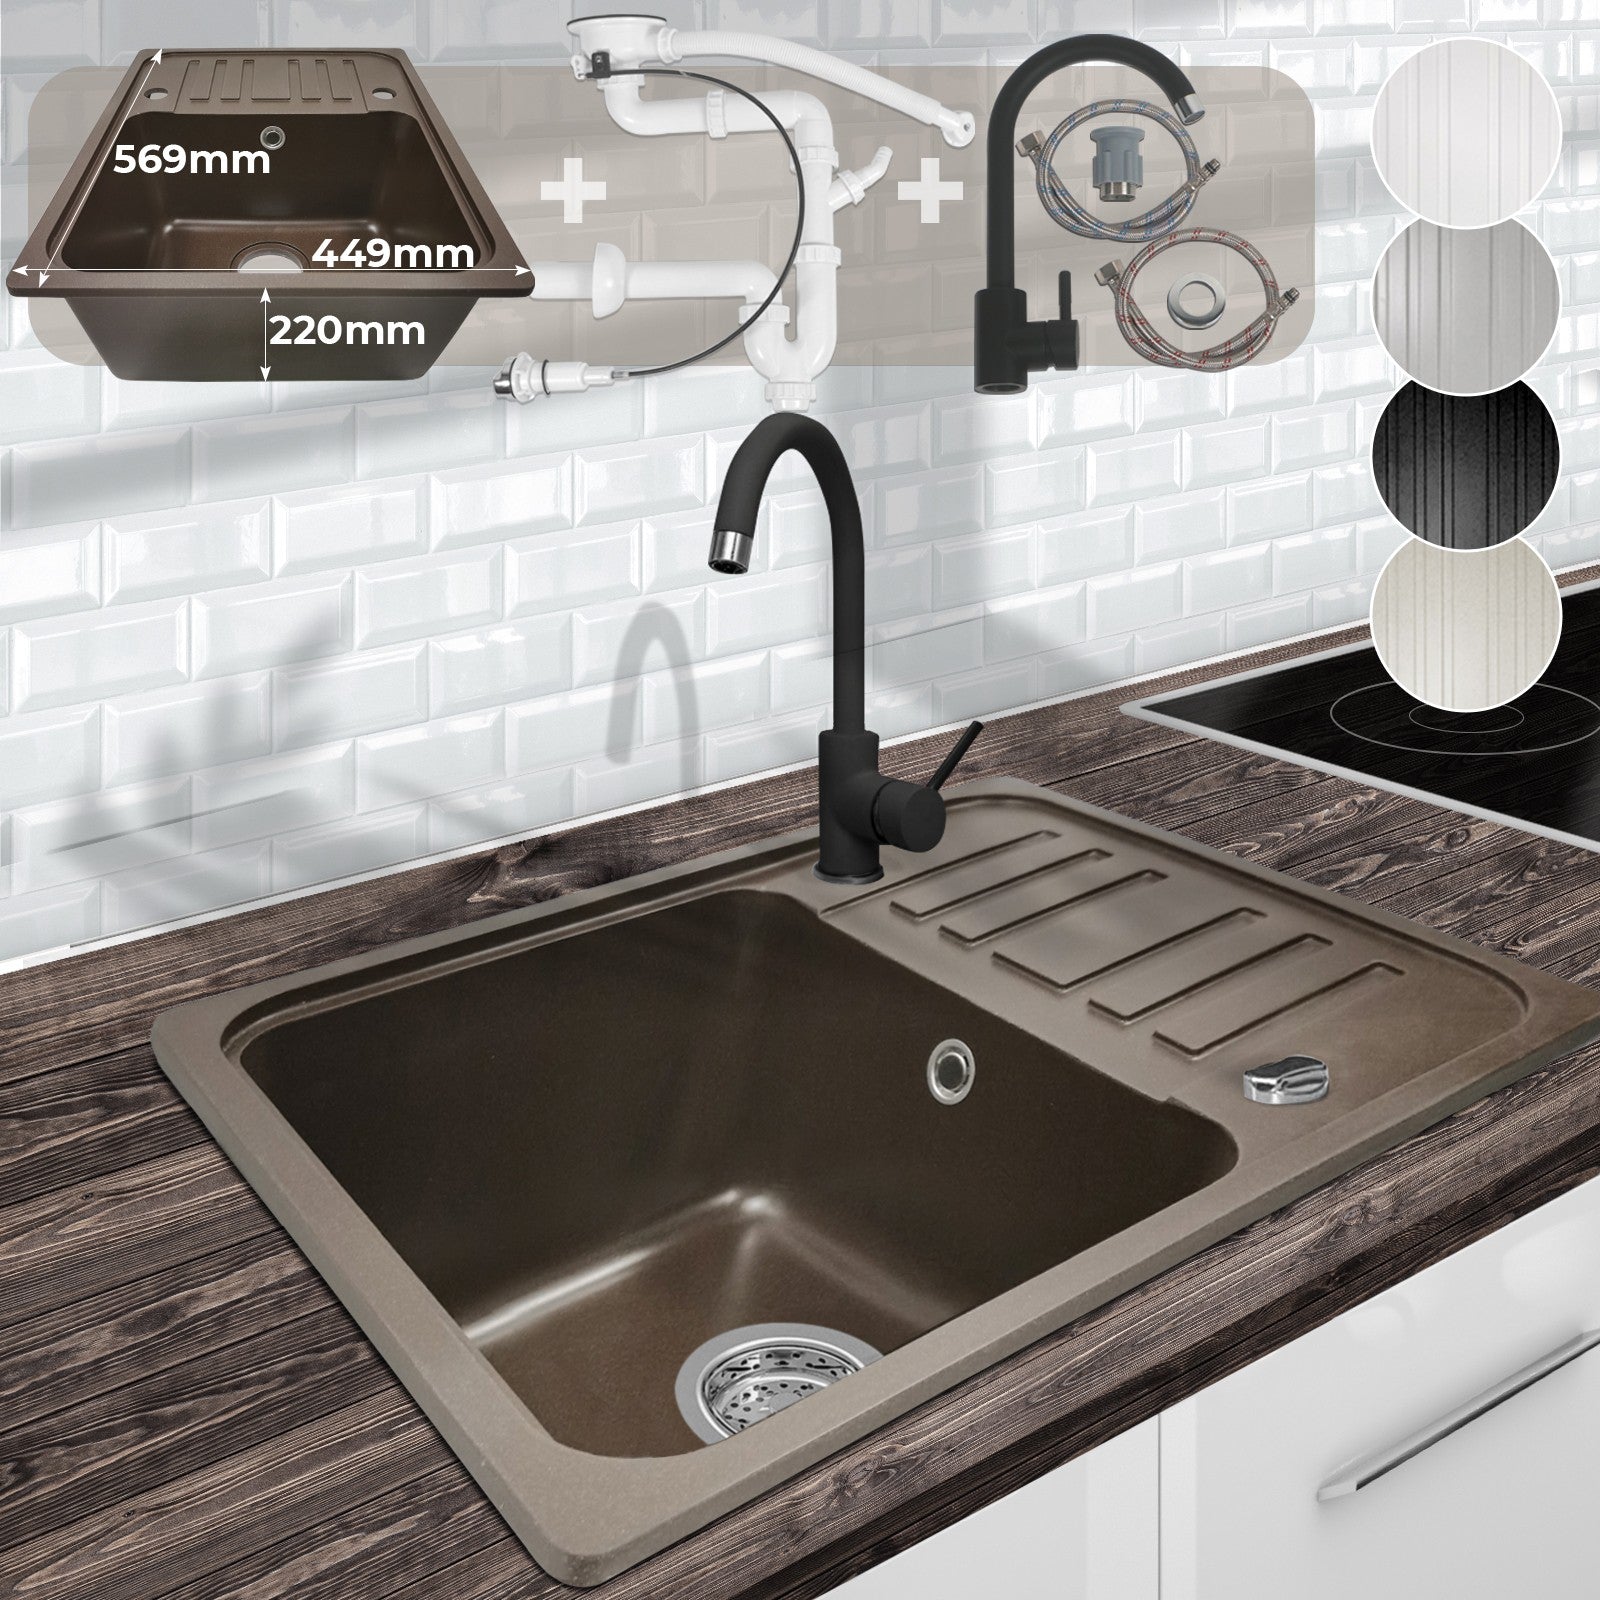 Køkkenvask med afløbsbakke, vandhane og vendbart afløbgranit, 569x220x449 mm, brun